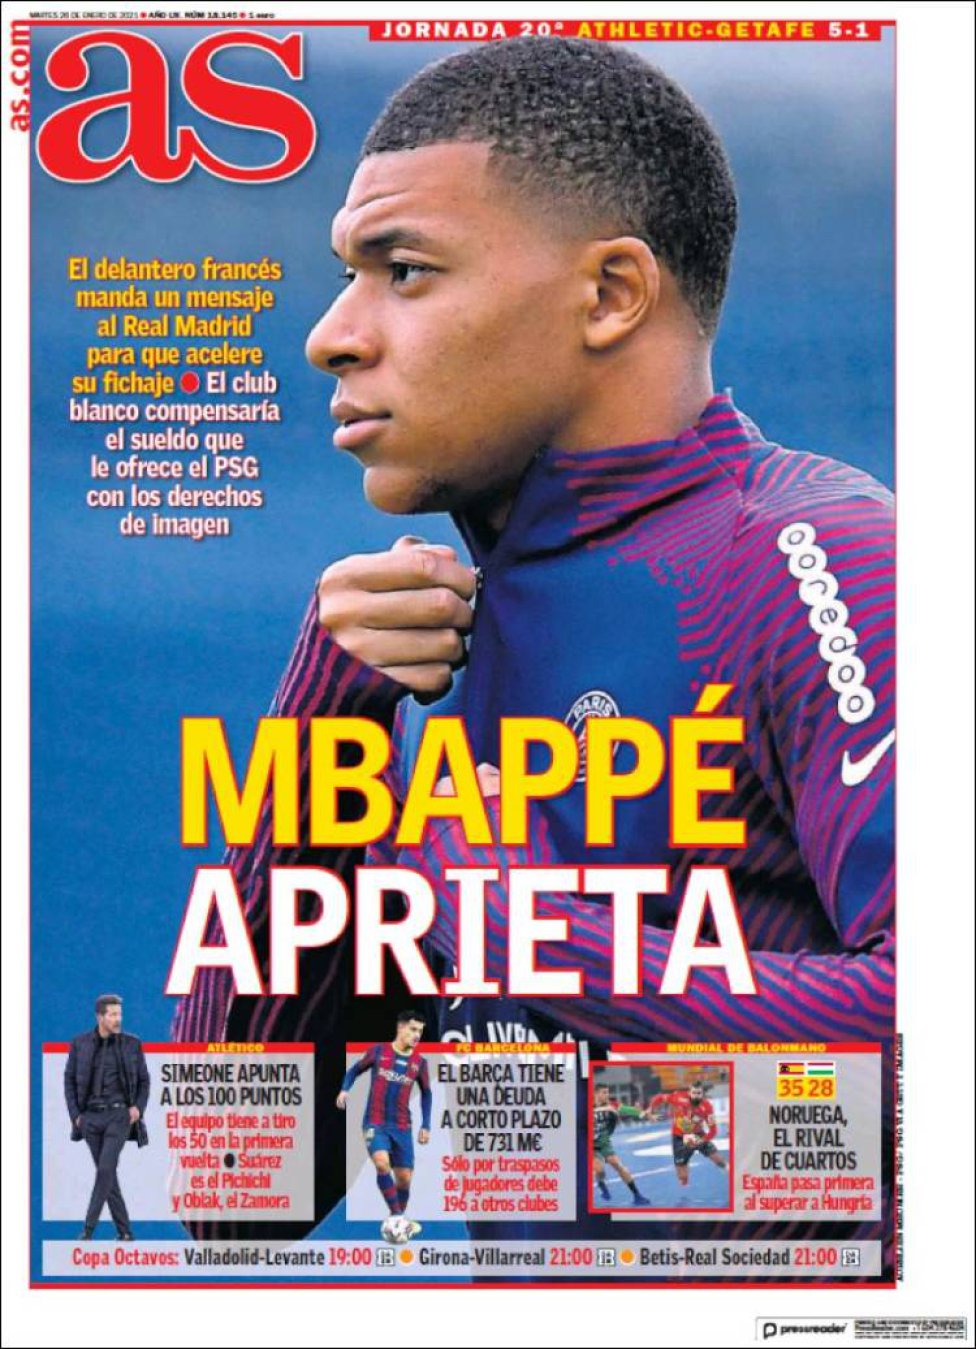 Mbappé aprieta'... las portadas deportivas de hoy 